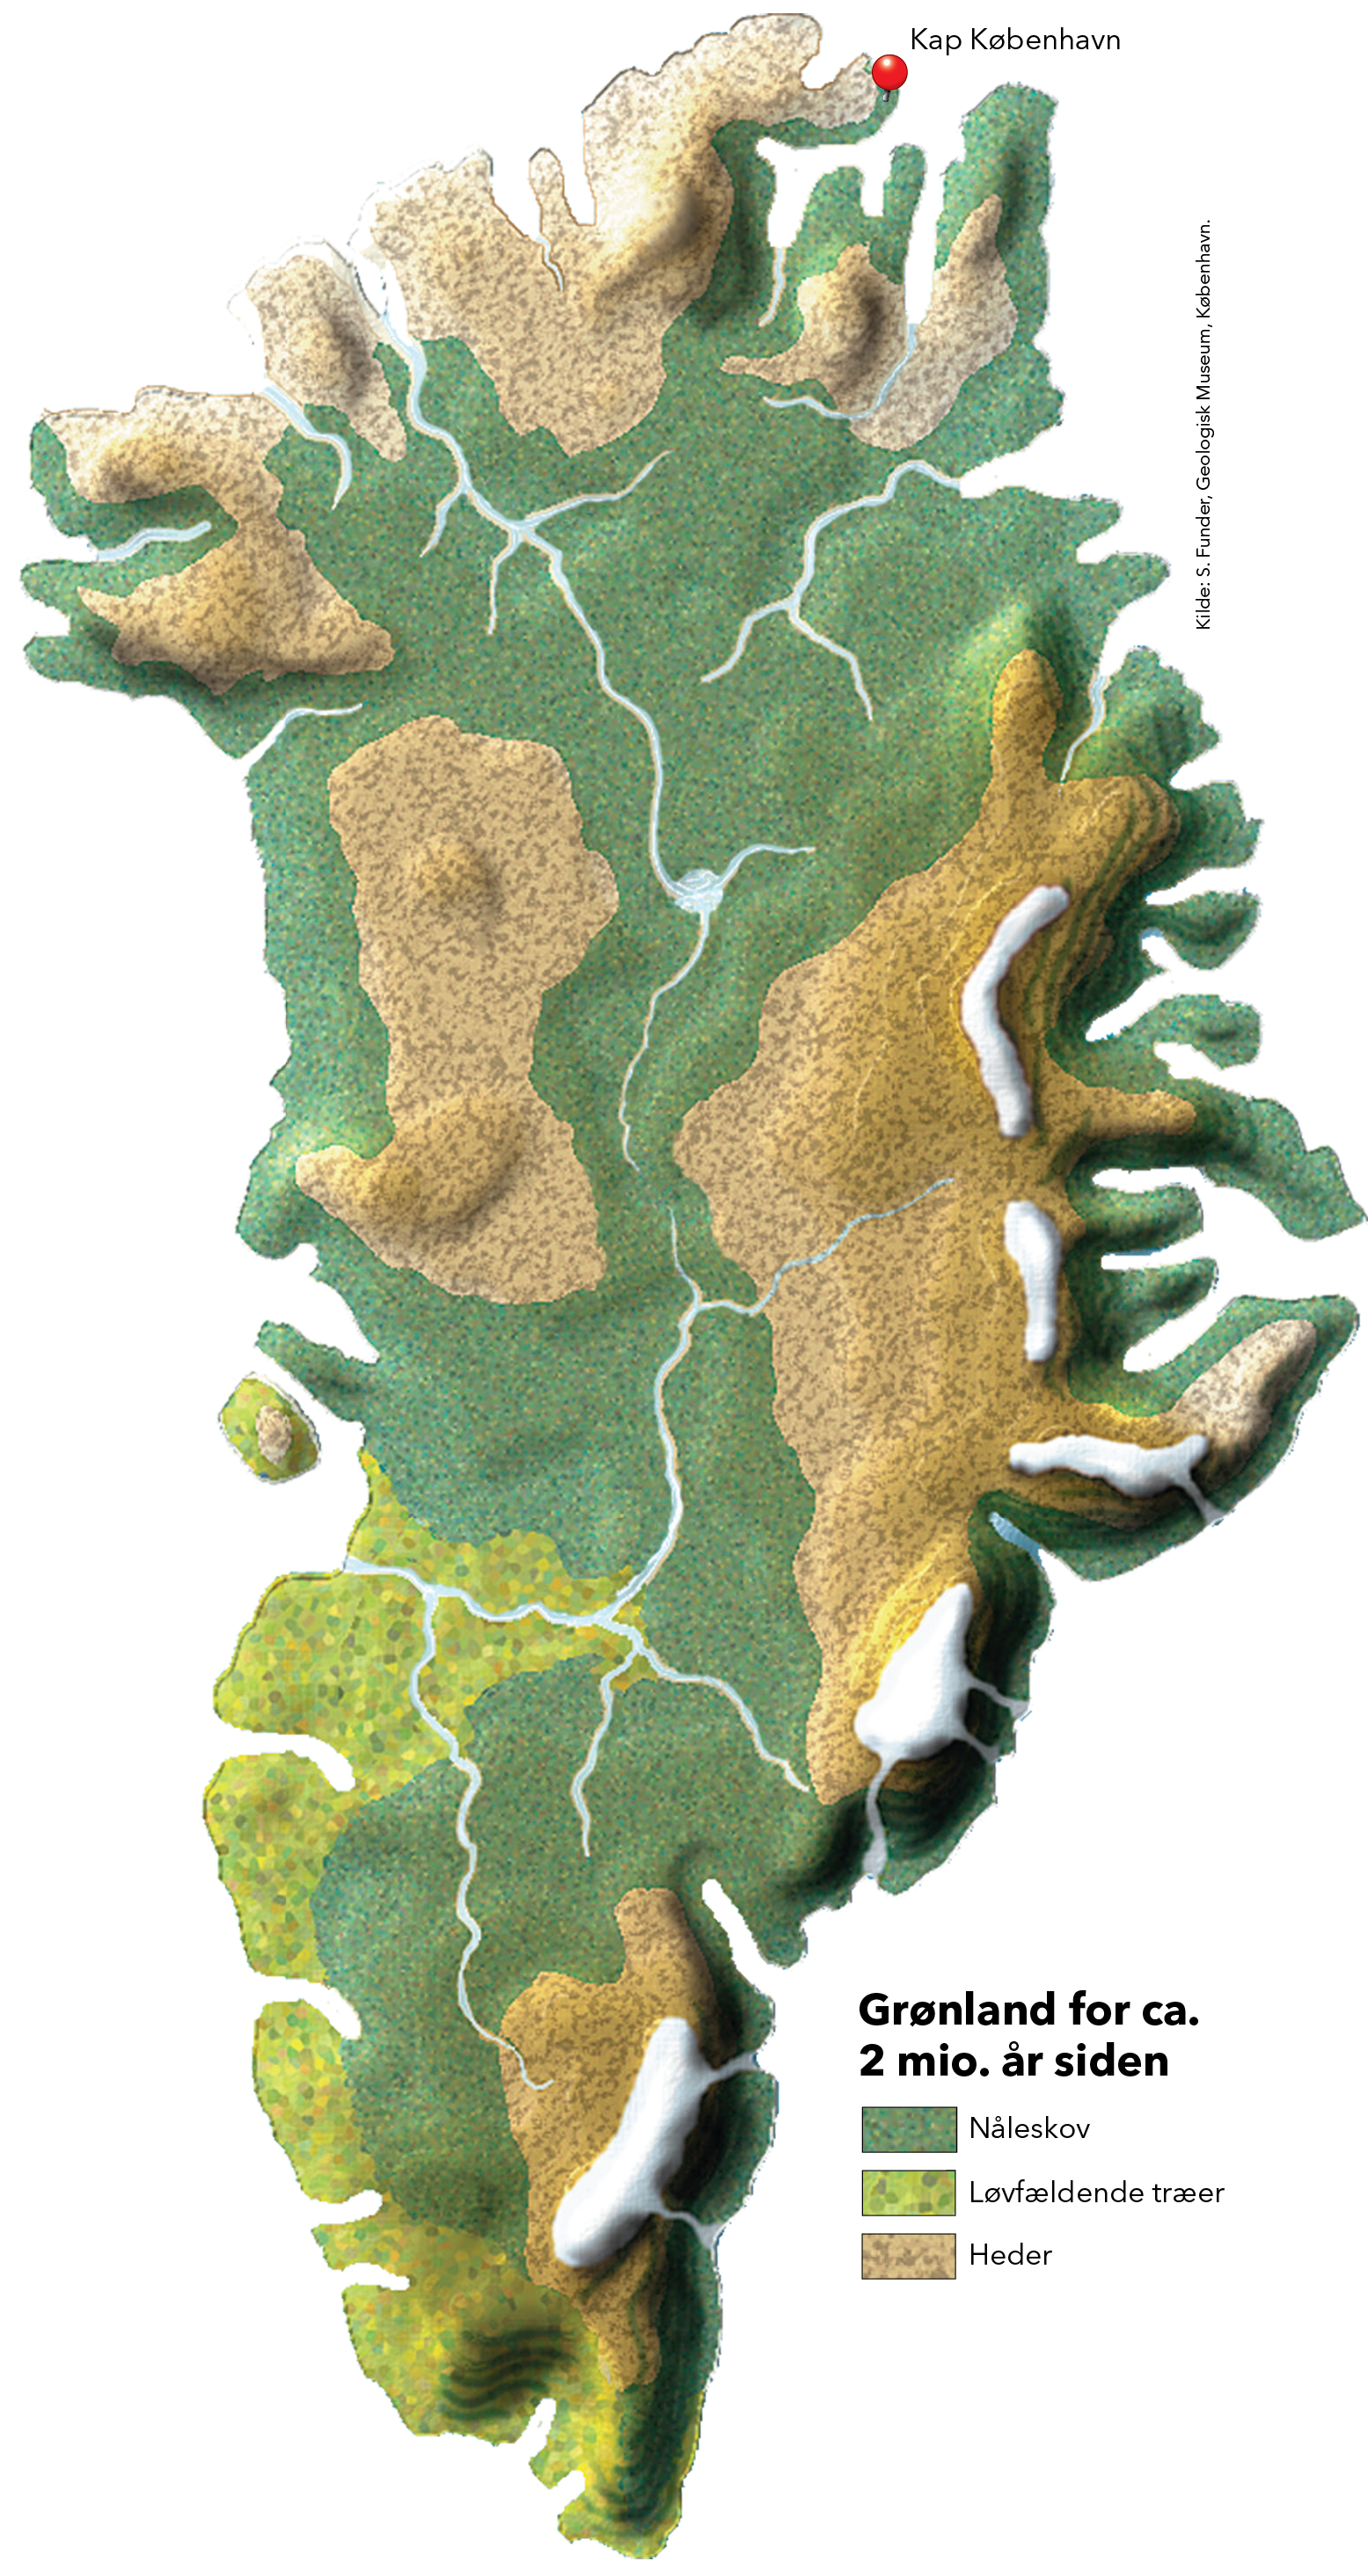 Kort over Grønland for to mio år siden med skove og heder